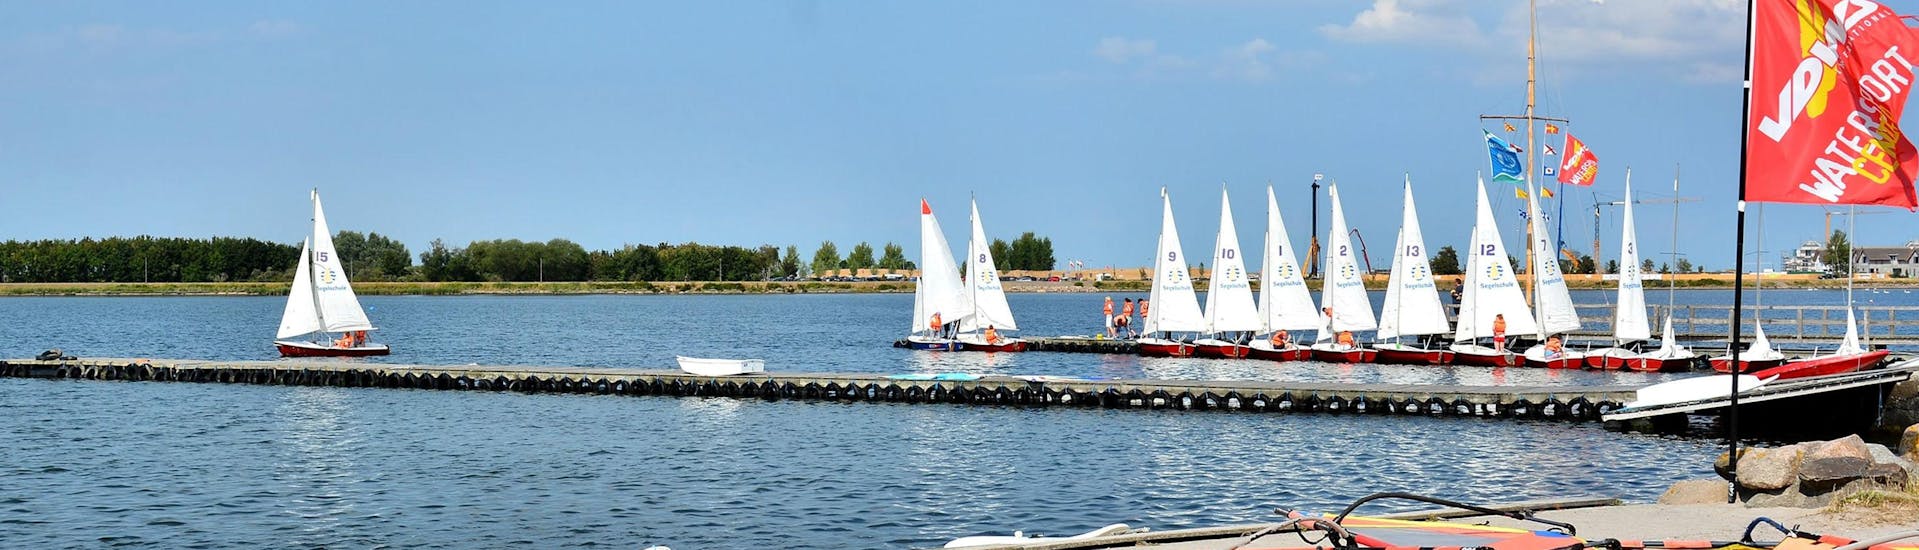 Ein Blick auf den See beim Windsurfen für Anfänger - Heiligenhafen mit dem Wassersportcenter Heiligenhafen.